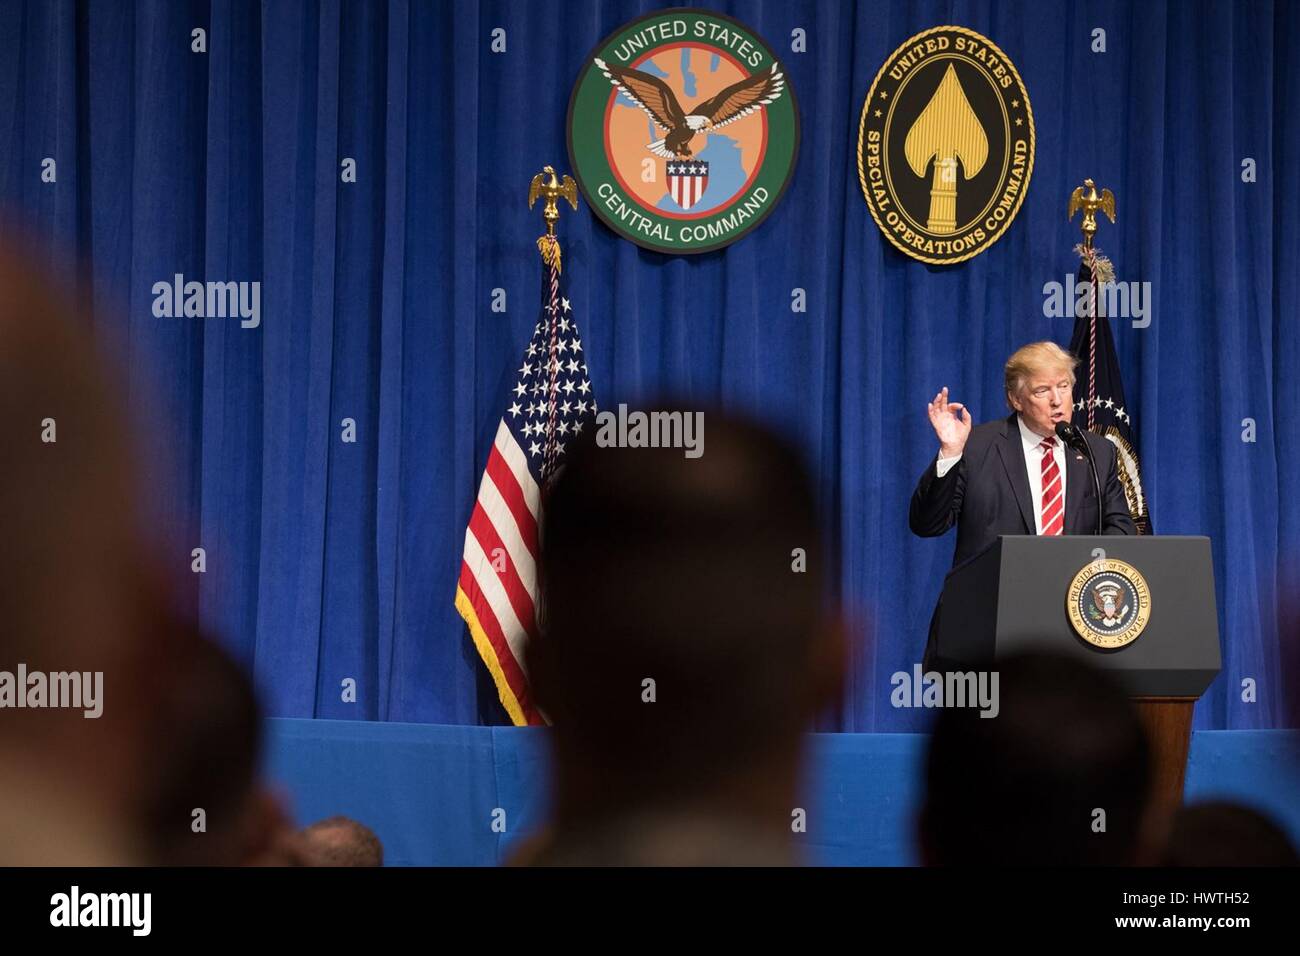 Président américain Donald Trump, prononce une allocution lors d'une visite au quartier général du Commandement central de l'armée américaine le 6 février 2017, à Tampa, en Floride. Banque D'Images